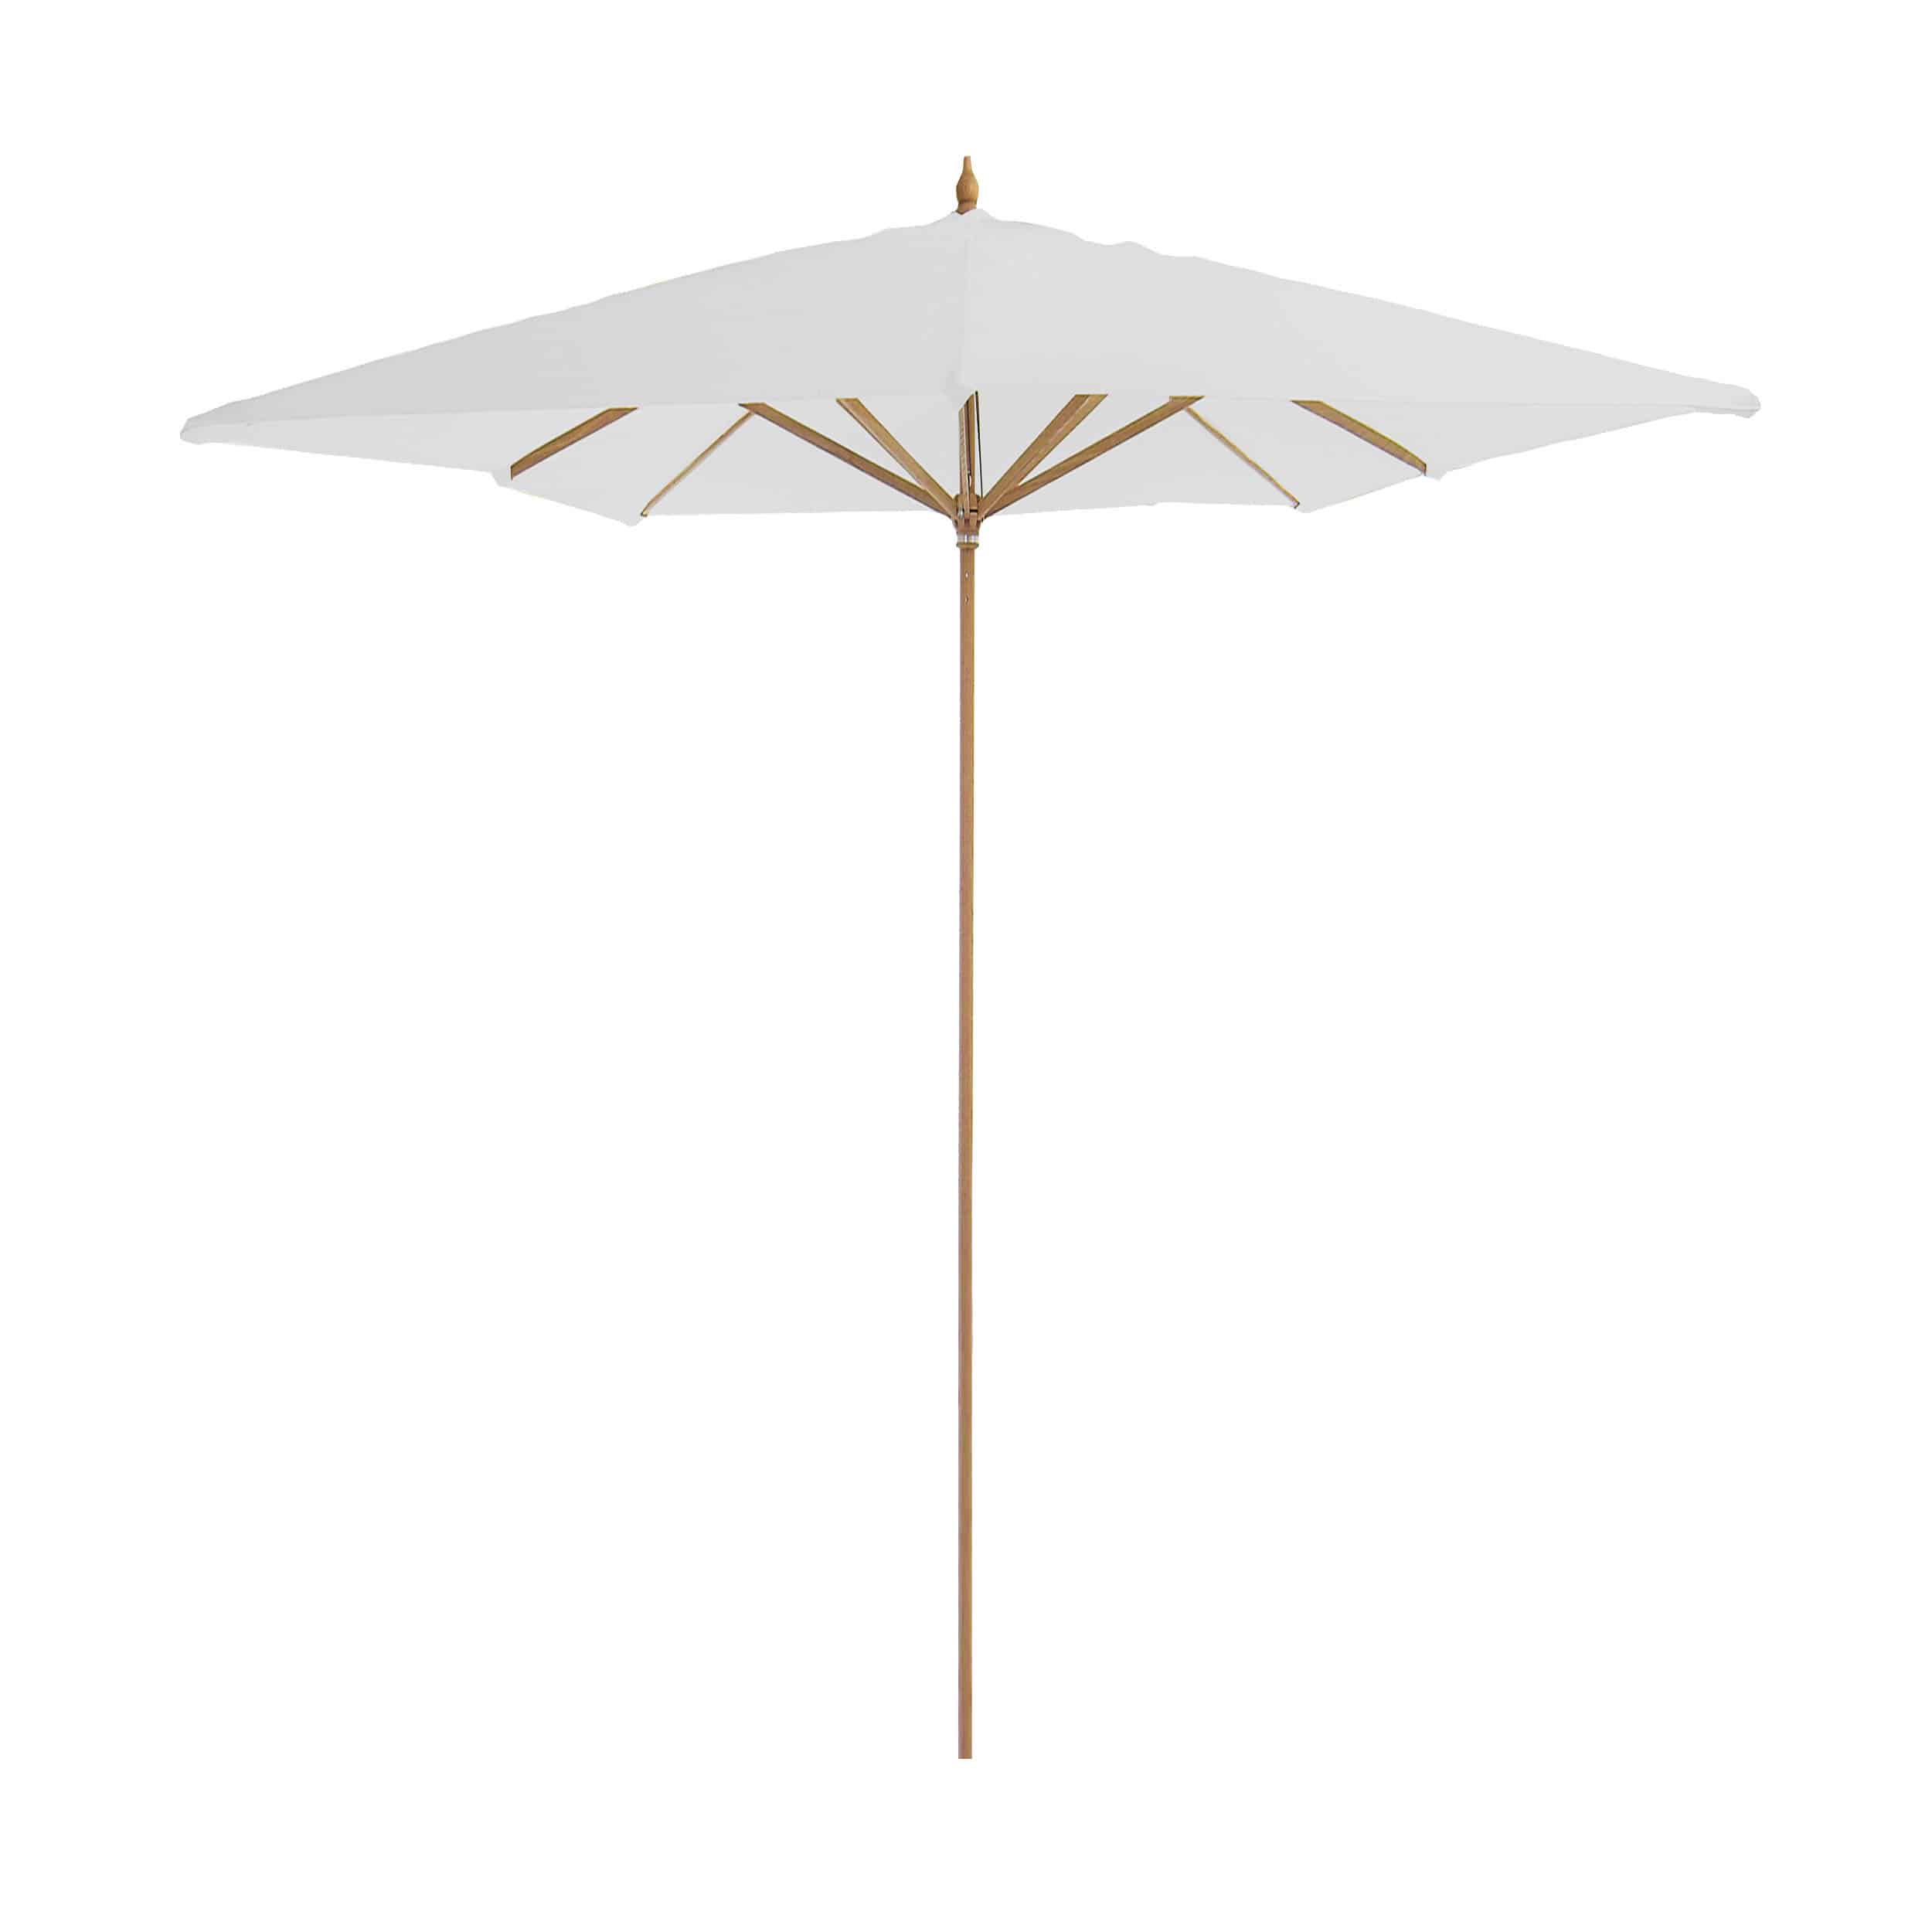 Landhausschirm quadratisch Sonnenschirm ohne Schirmständer